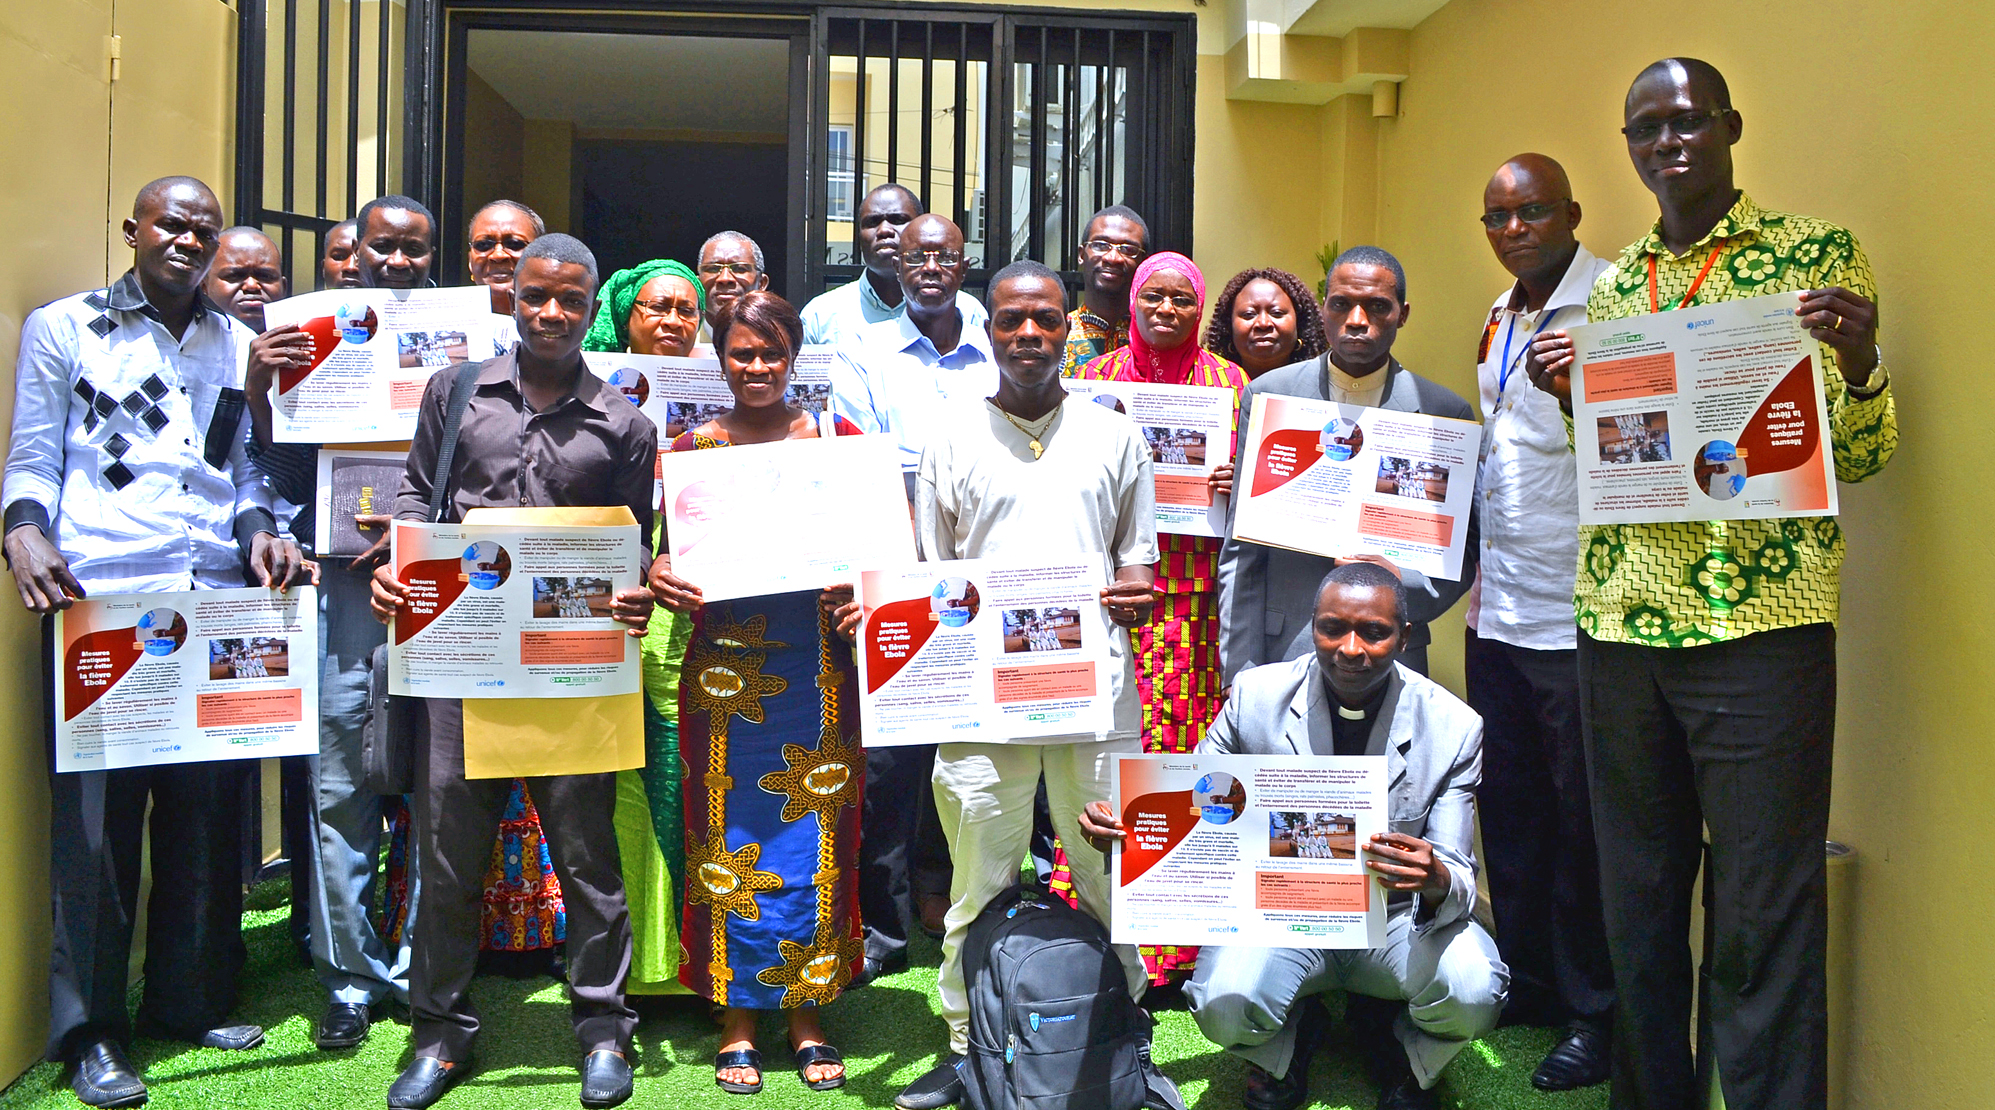 Imame, Priester und Bischöfe in Senegal nehmen gemeinsam an einem Präventions-Workshop von World Vision teil